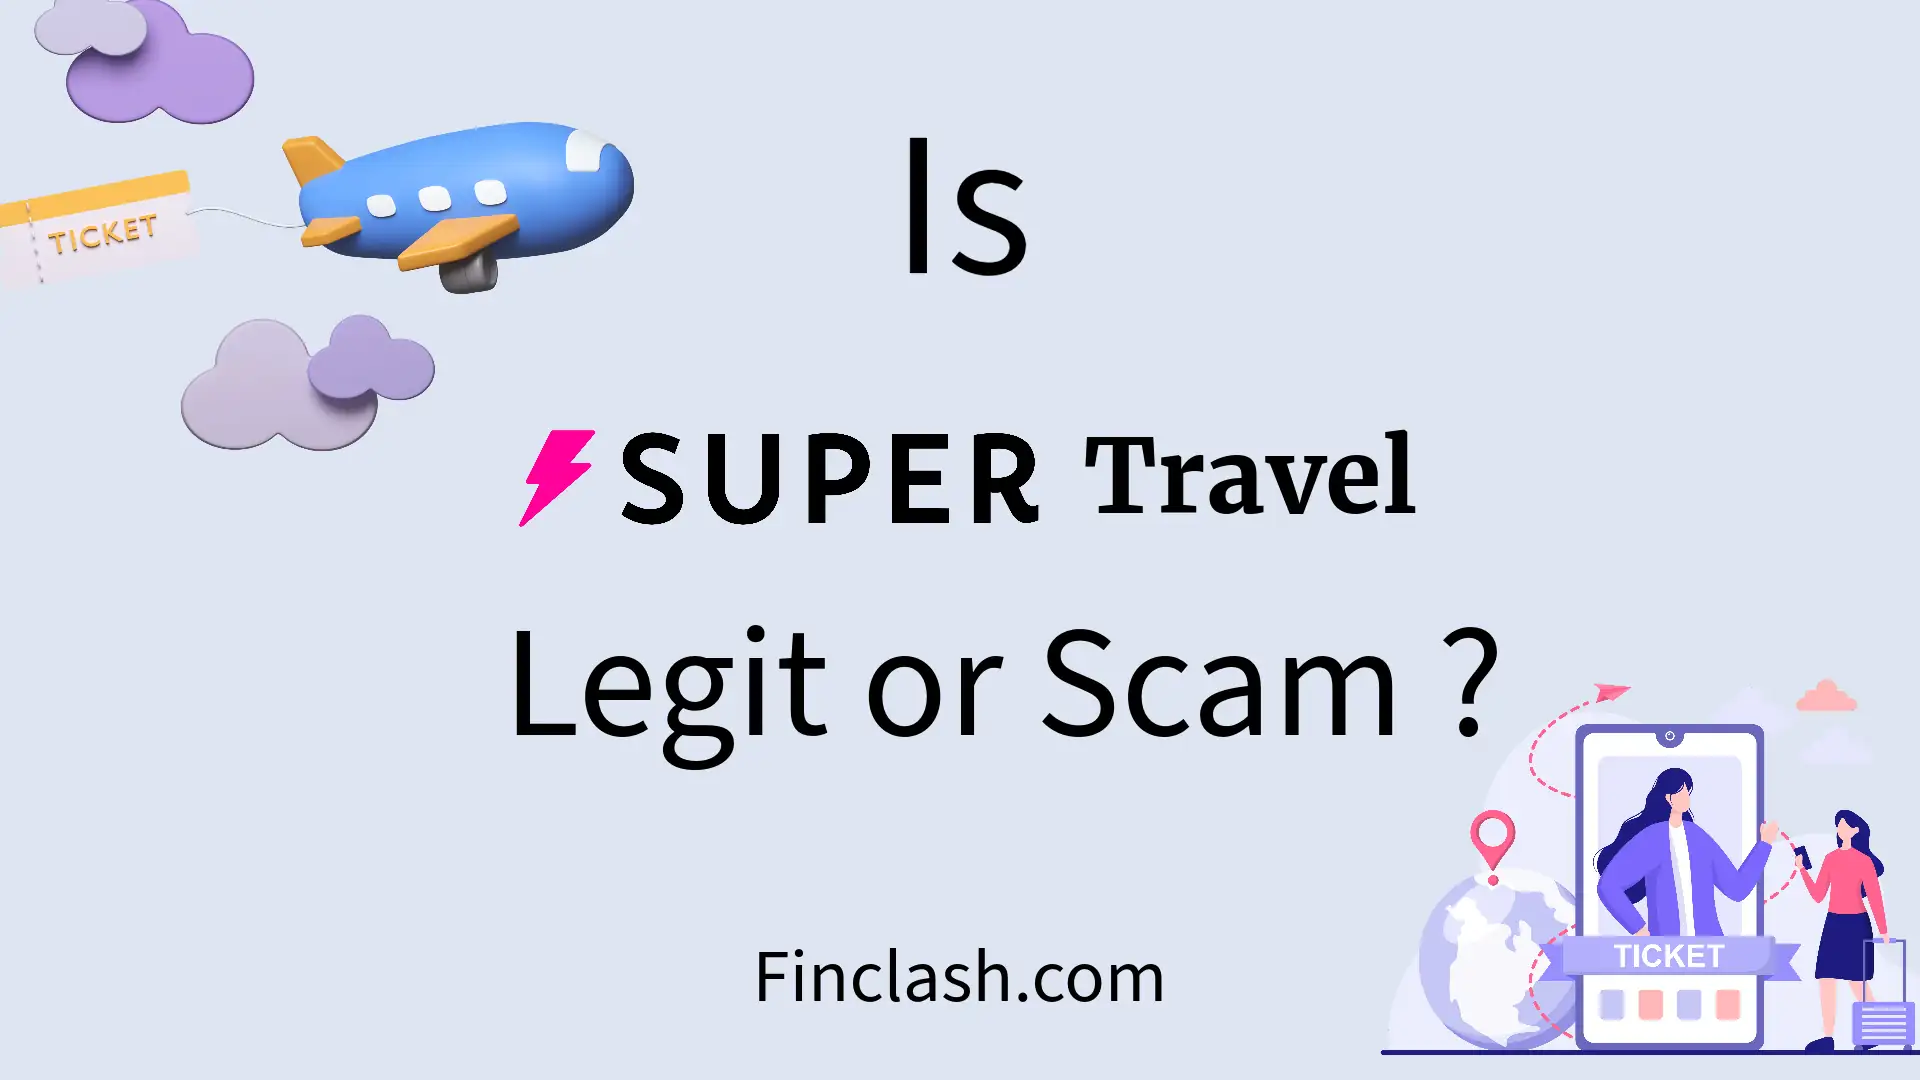 Super Travel legit or scam ?